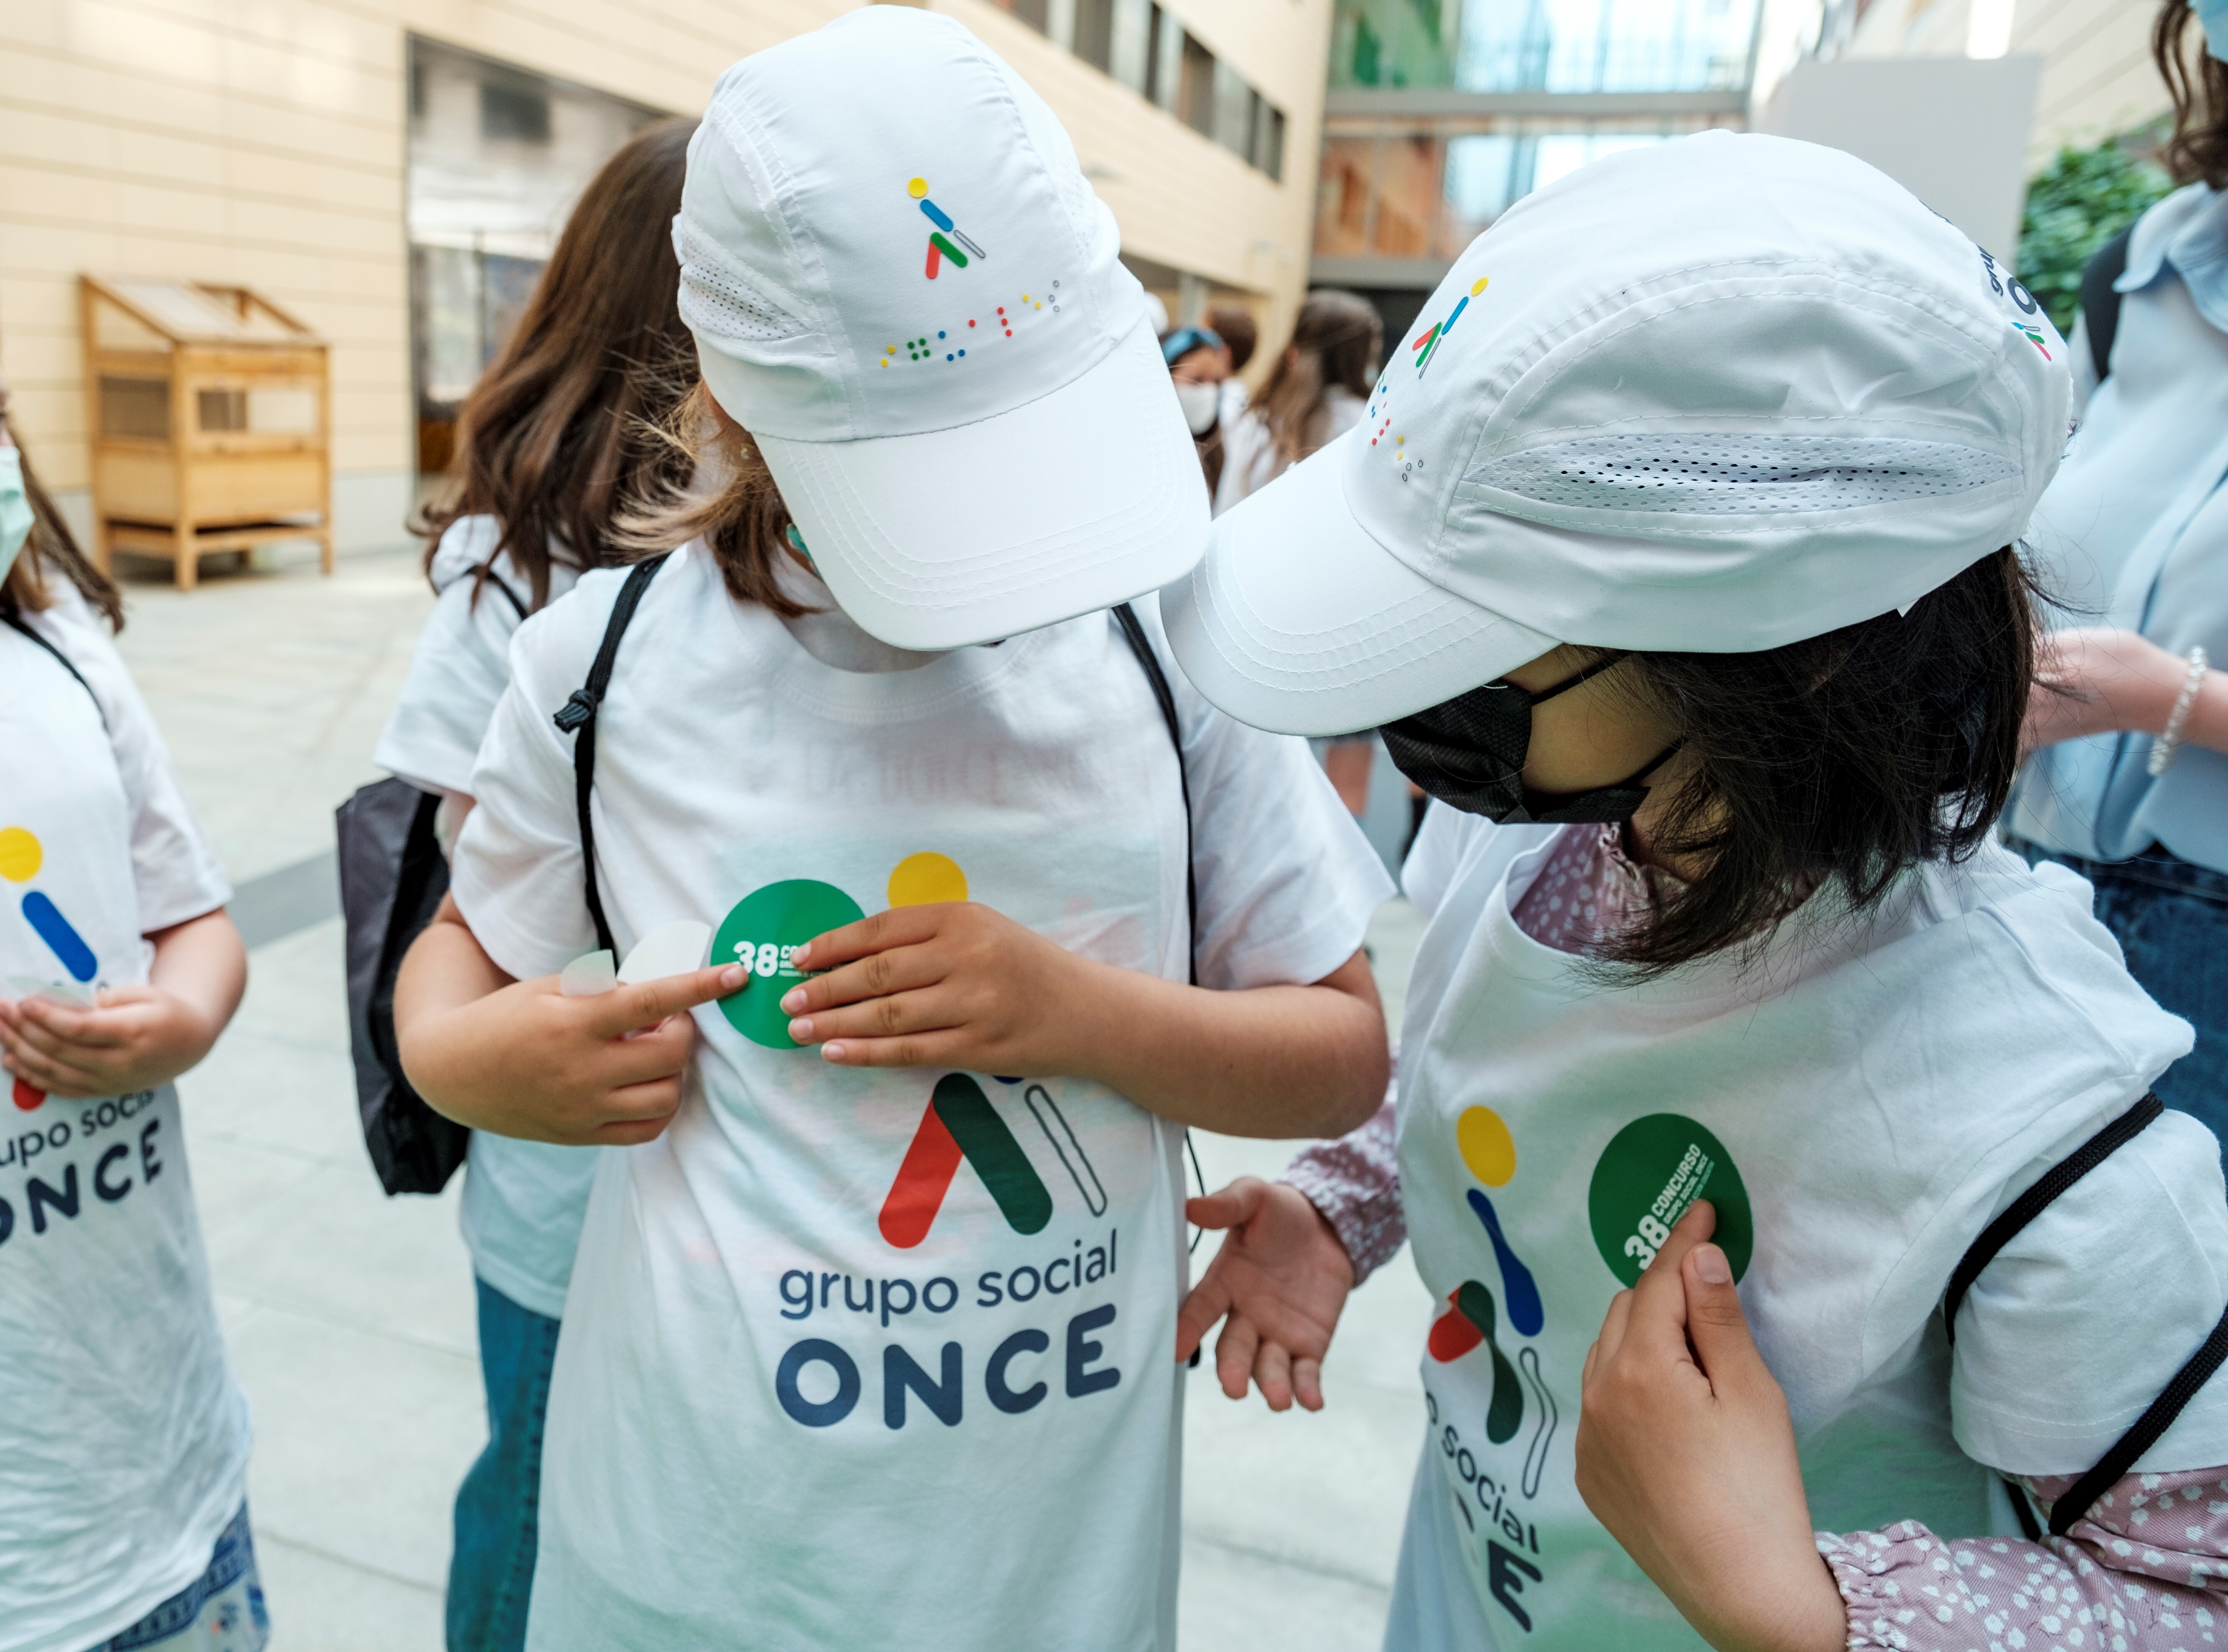 Dues nenes amb gorra i samarreta amb el logo del Grup Social ONCE